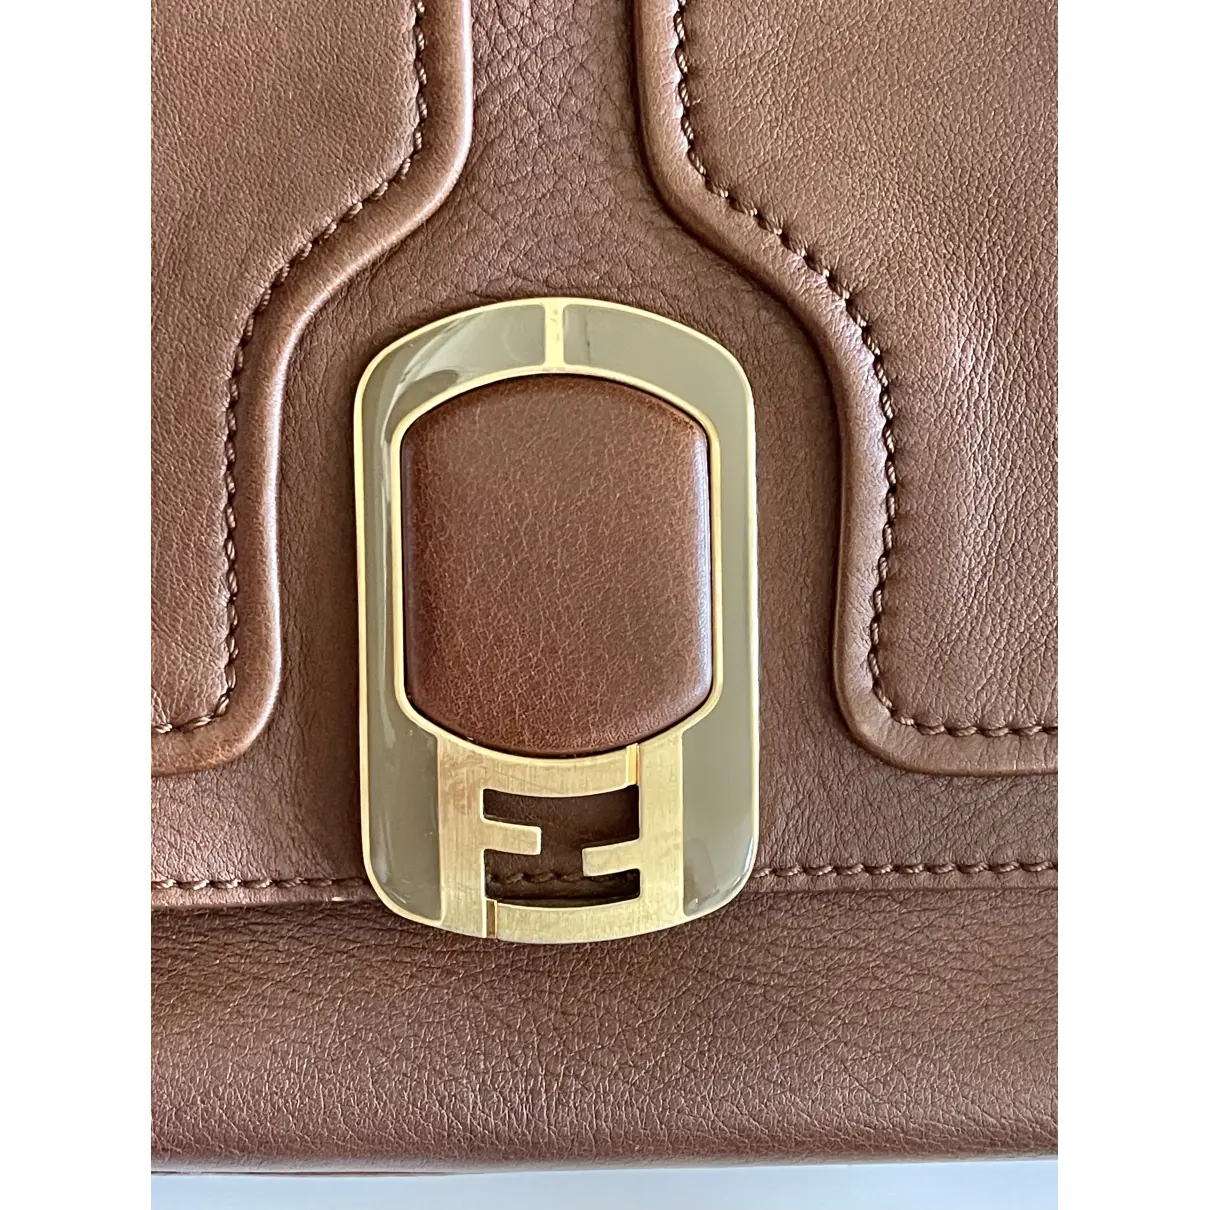 Silvana leather handbag Fendi - Vintage